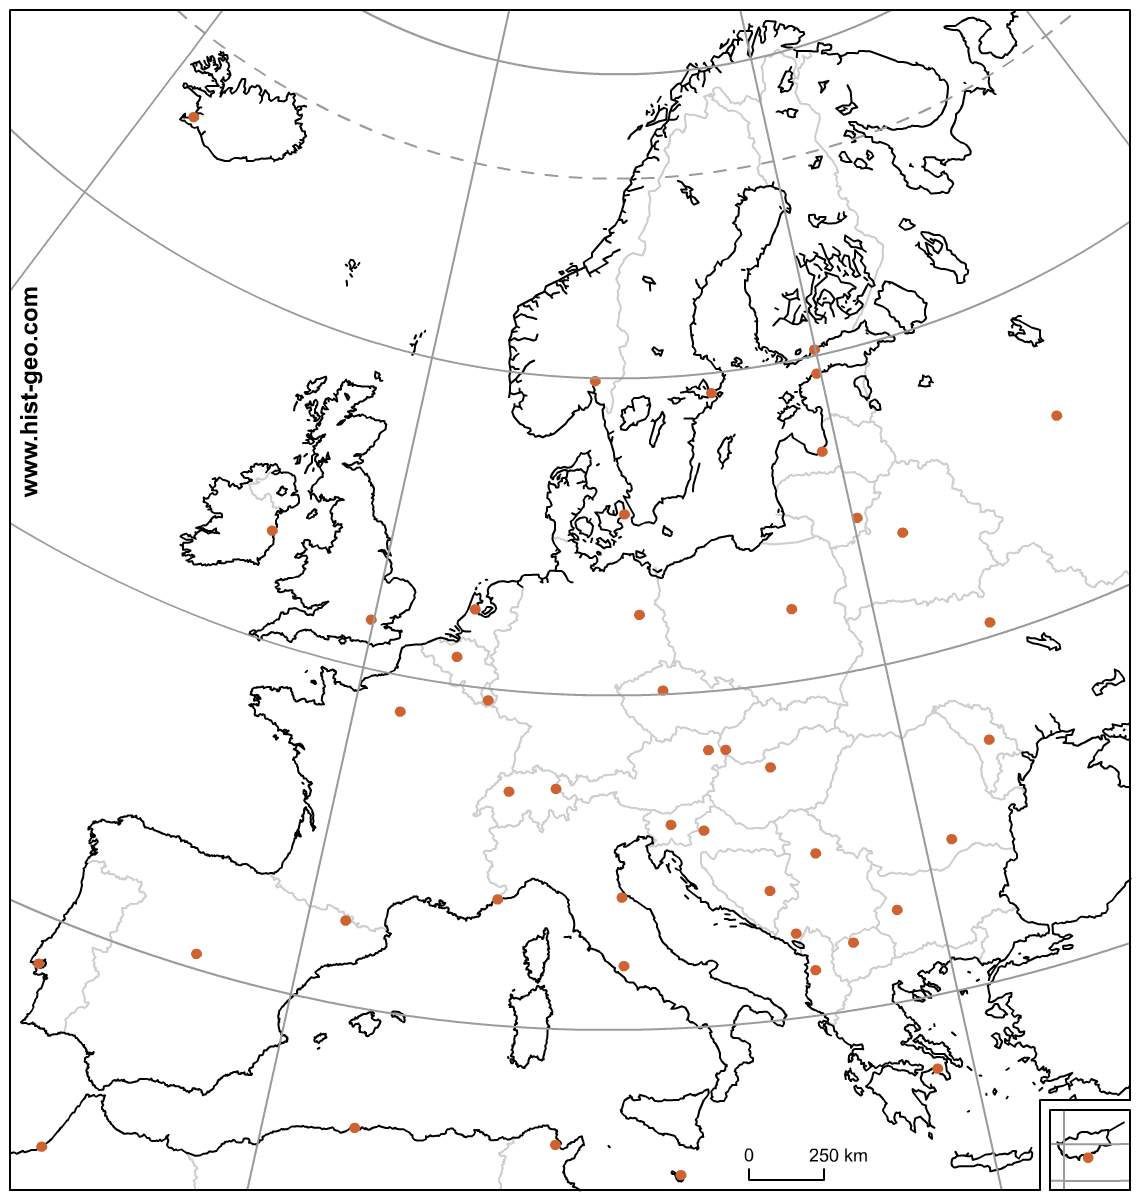 Carte Muette Des Pays Et Capitales D'europe (Ue) Avec intérieur Capitale Europe Carte